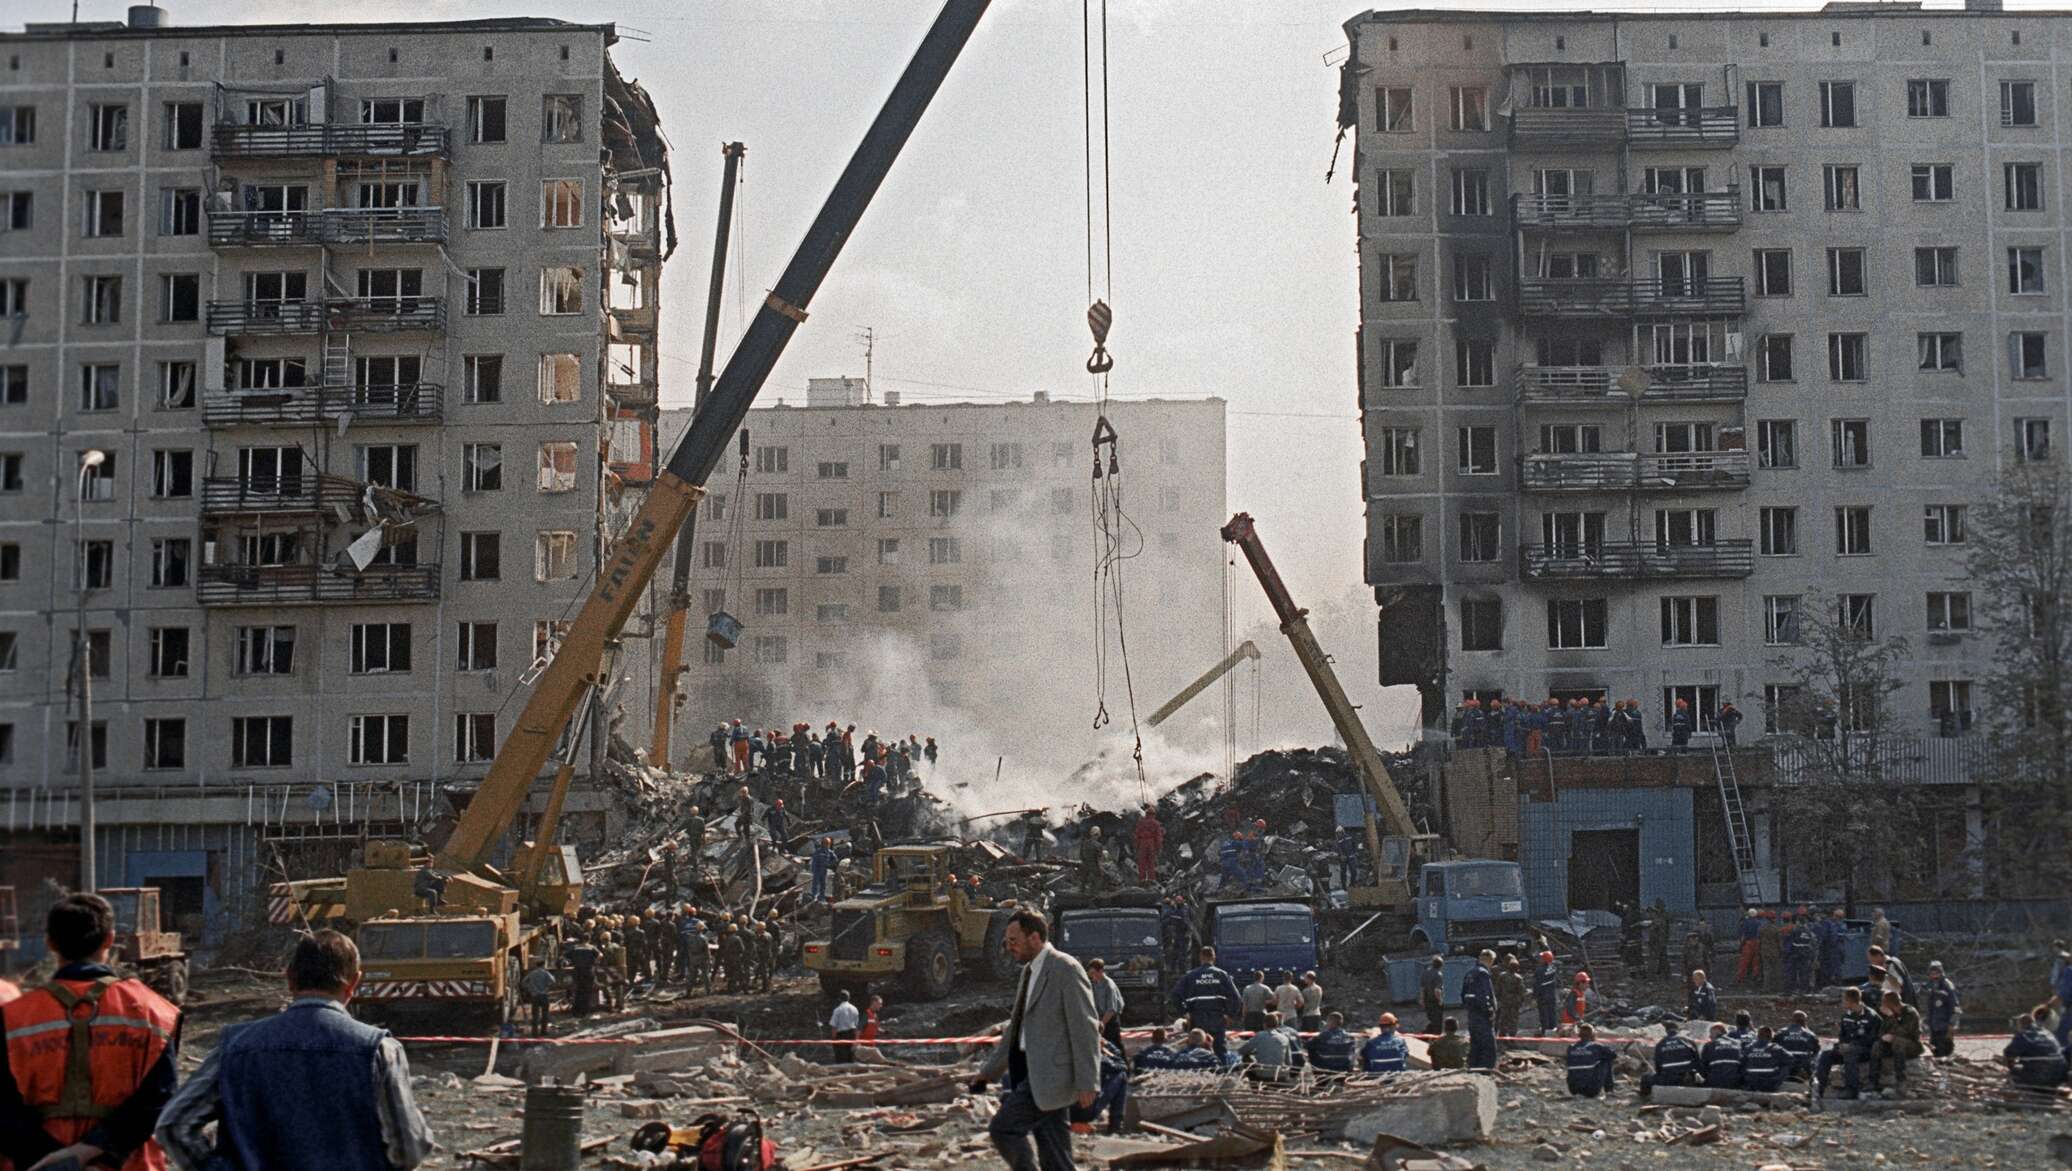 Взорвали дома в москве каком году. Теракт в Москве 1999 Гурьянова. Теракт на улице Гурьянова 1999. Взрыв дома на Гурьянова 1999.